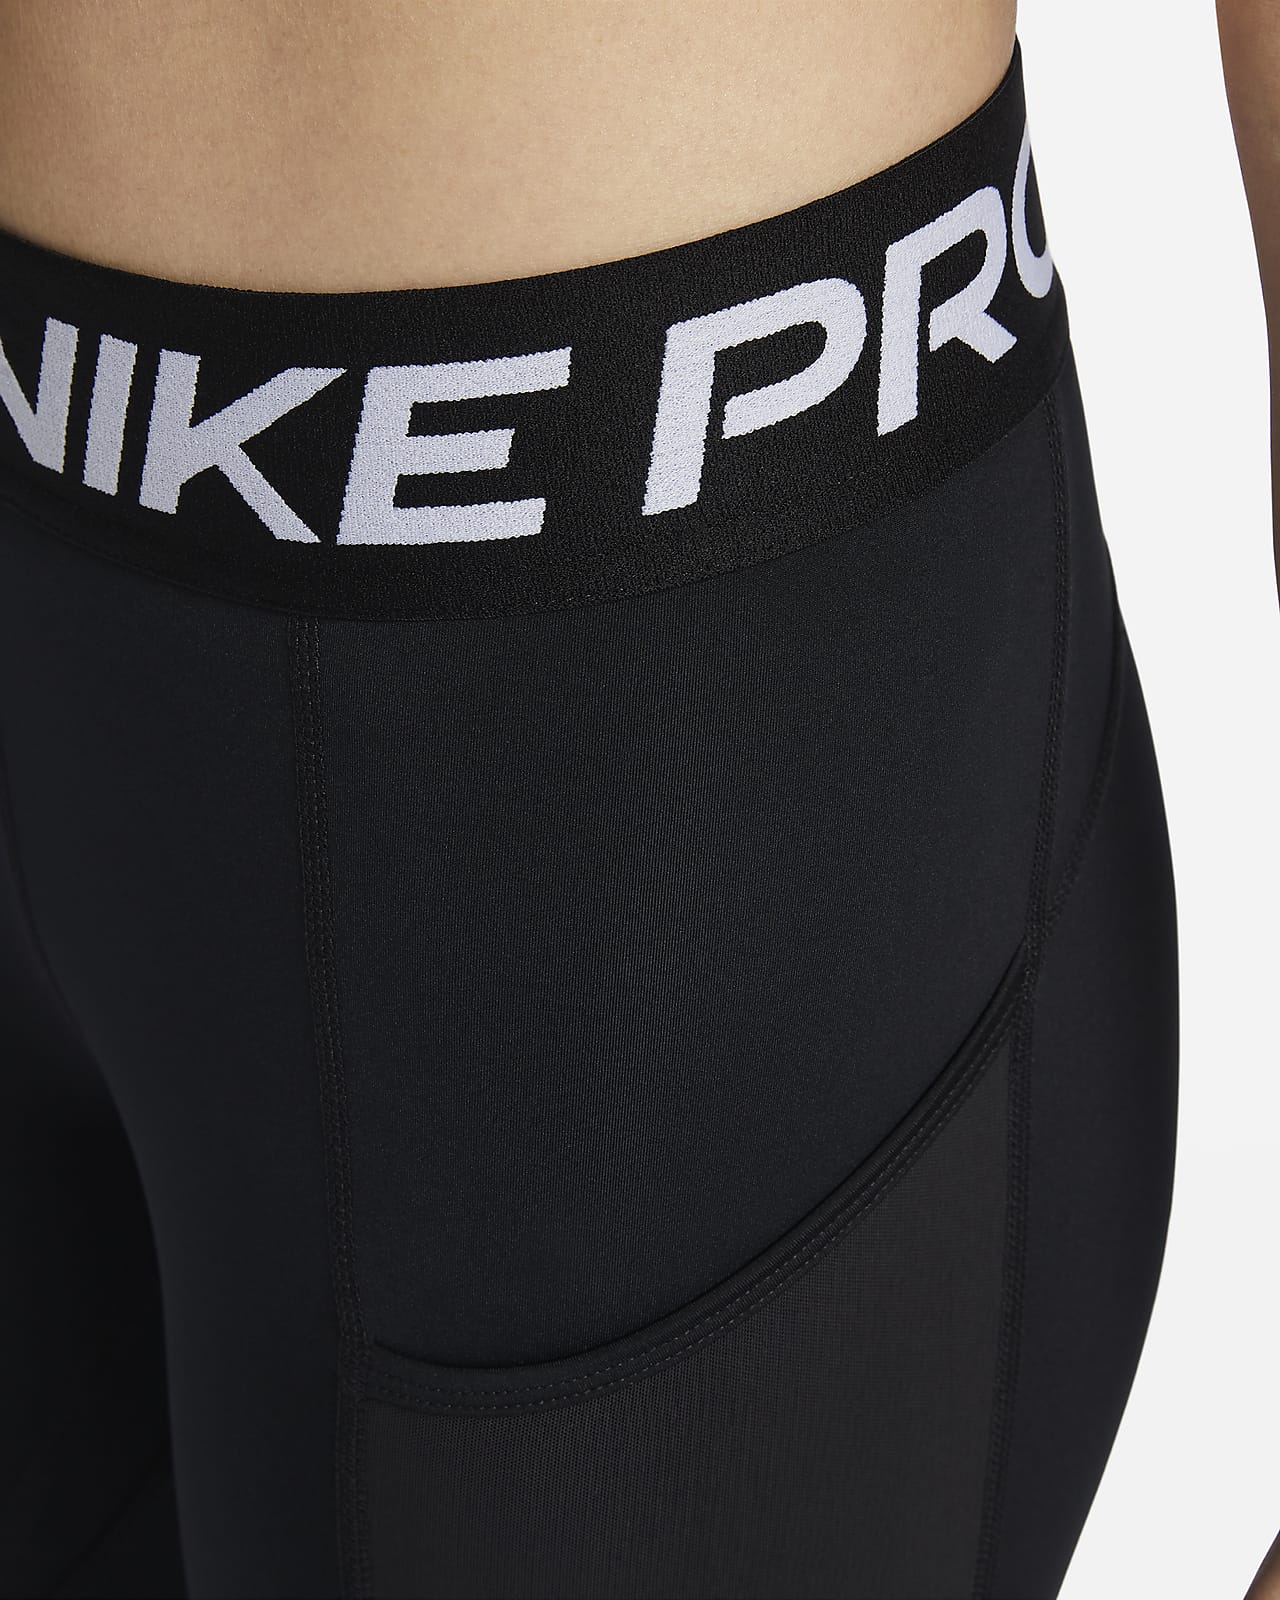 Nike Pro 365 Hi-Rise 7/8 Dri-Fit Leggings Women's Size Medium Black FREE  SHIP